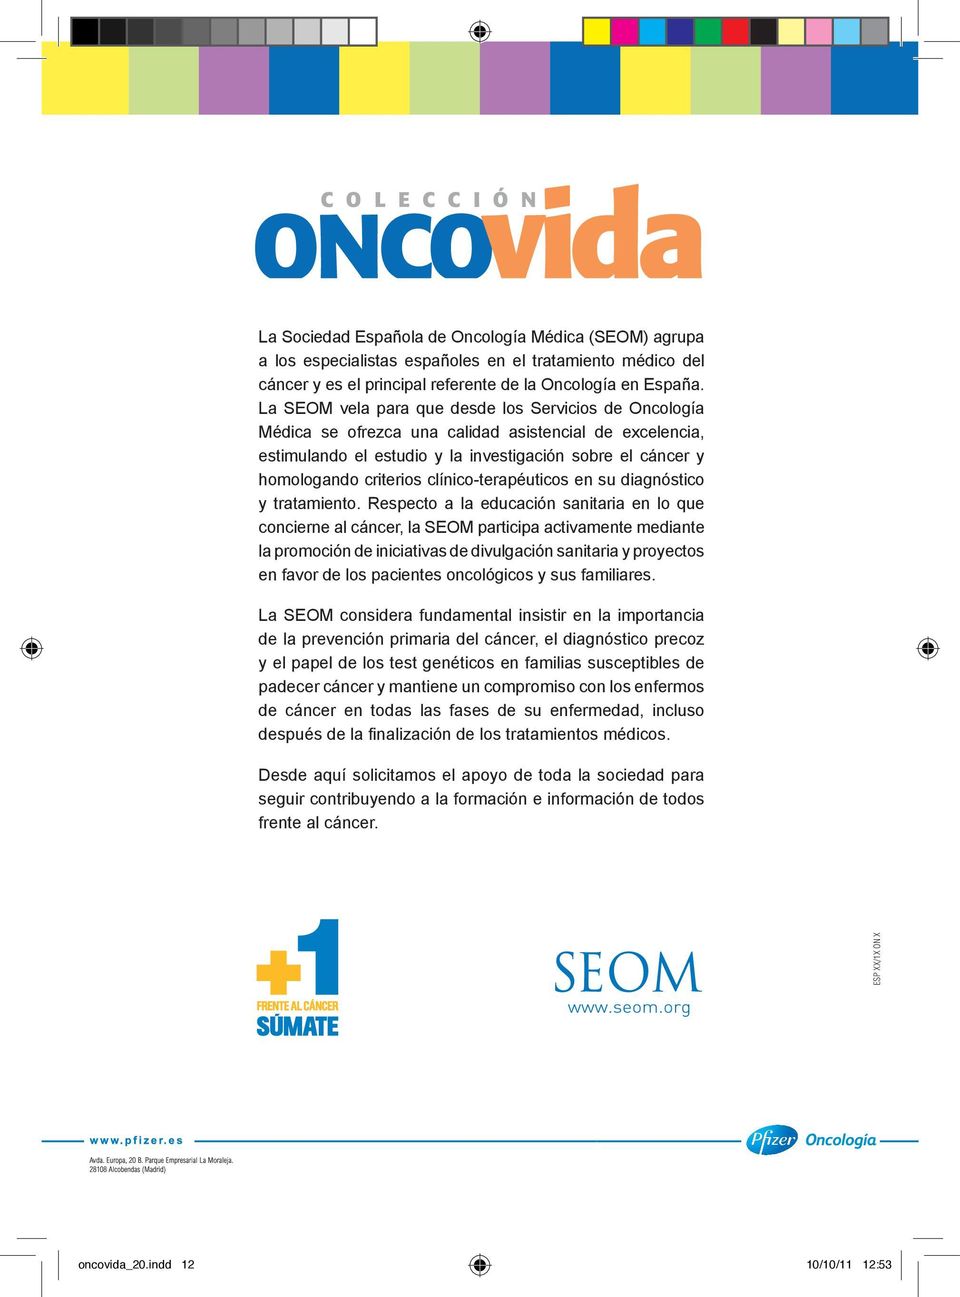 La SEOM vela para que desde los Servicios de Oncología Médica se ofrezca una calidad asistencial de excelencia, estimulando el estudio y la investigación sobre el cáncer y homologando criterios